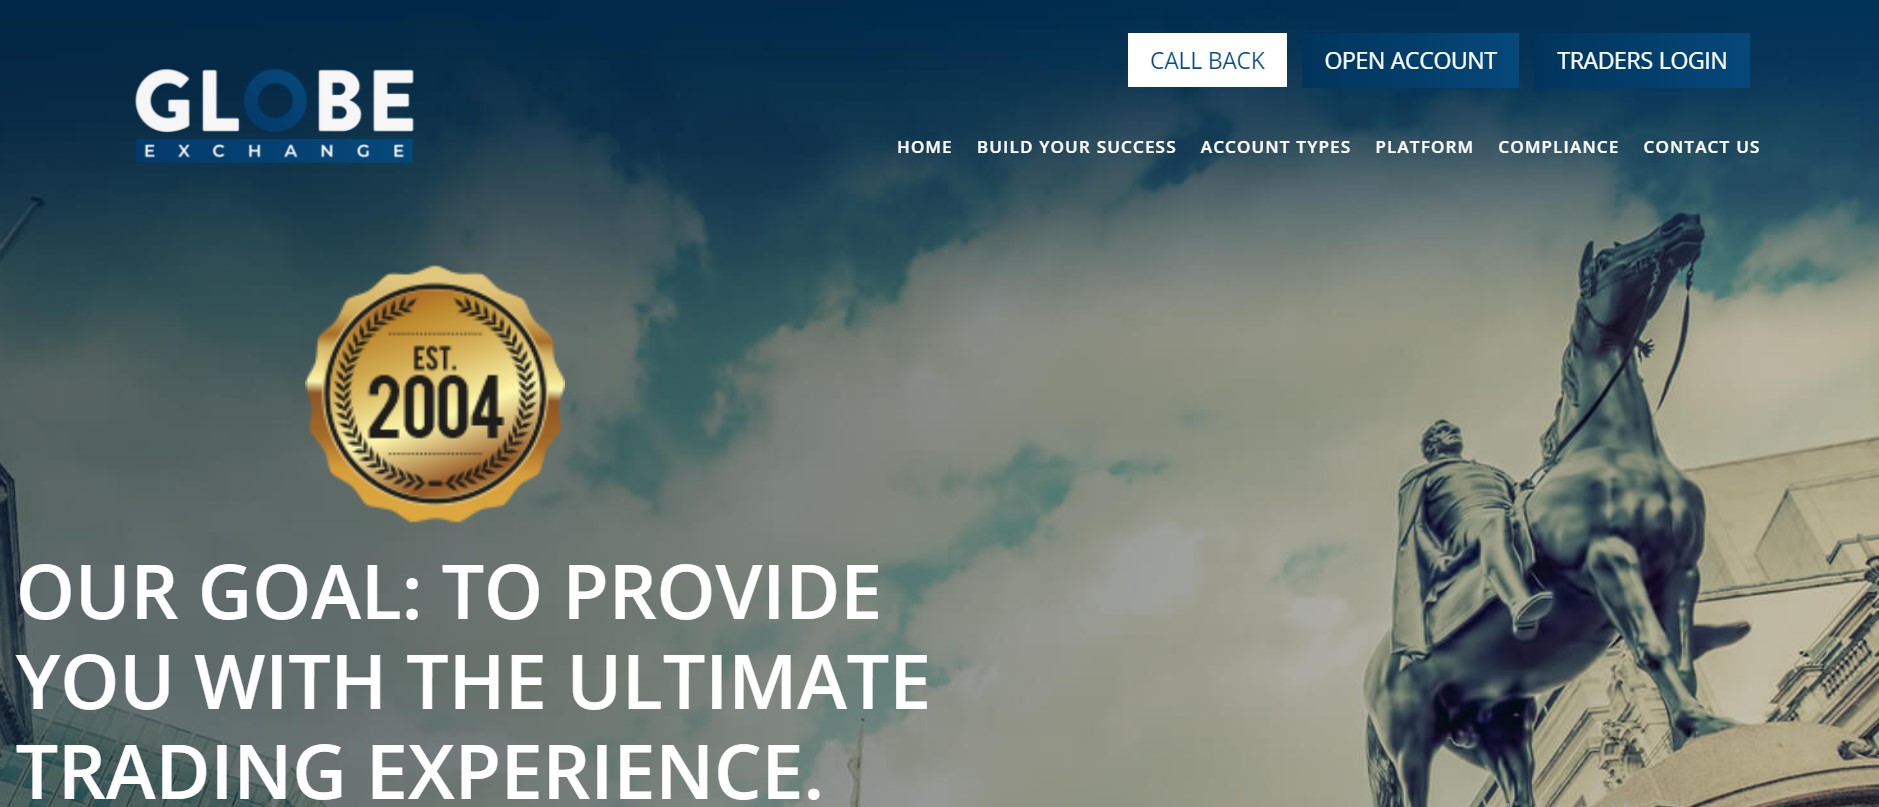 Globe Exchange website